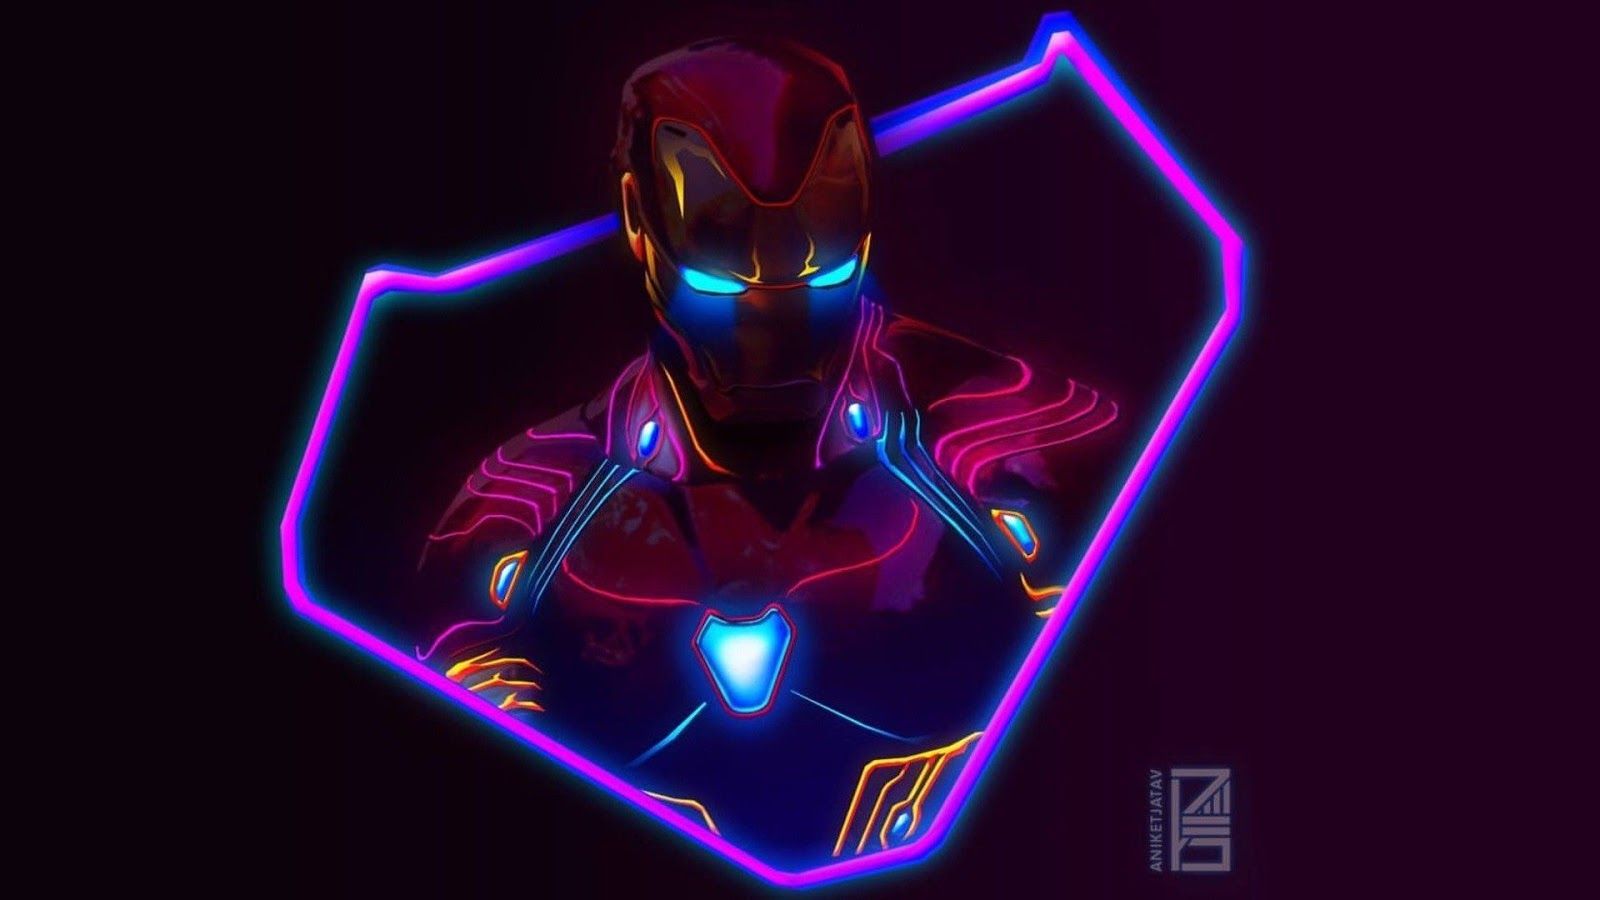  Iron Man Hintergrundbild 1600x900. Iron Man Aesthetic Wallpaper Free Iron Man Aesthetic Background